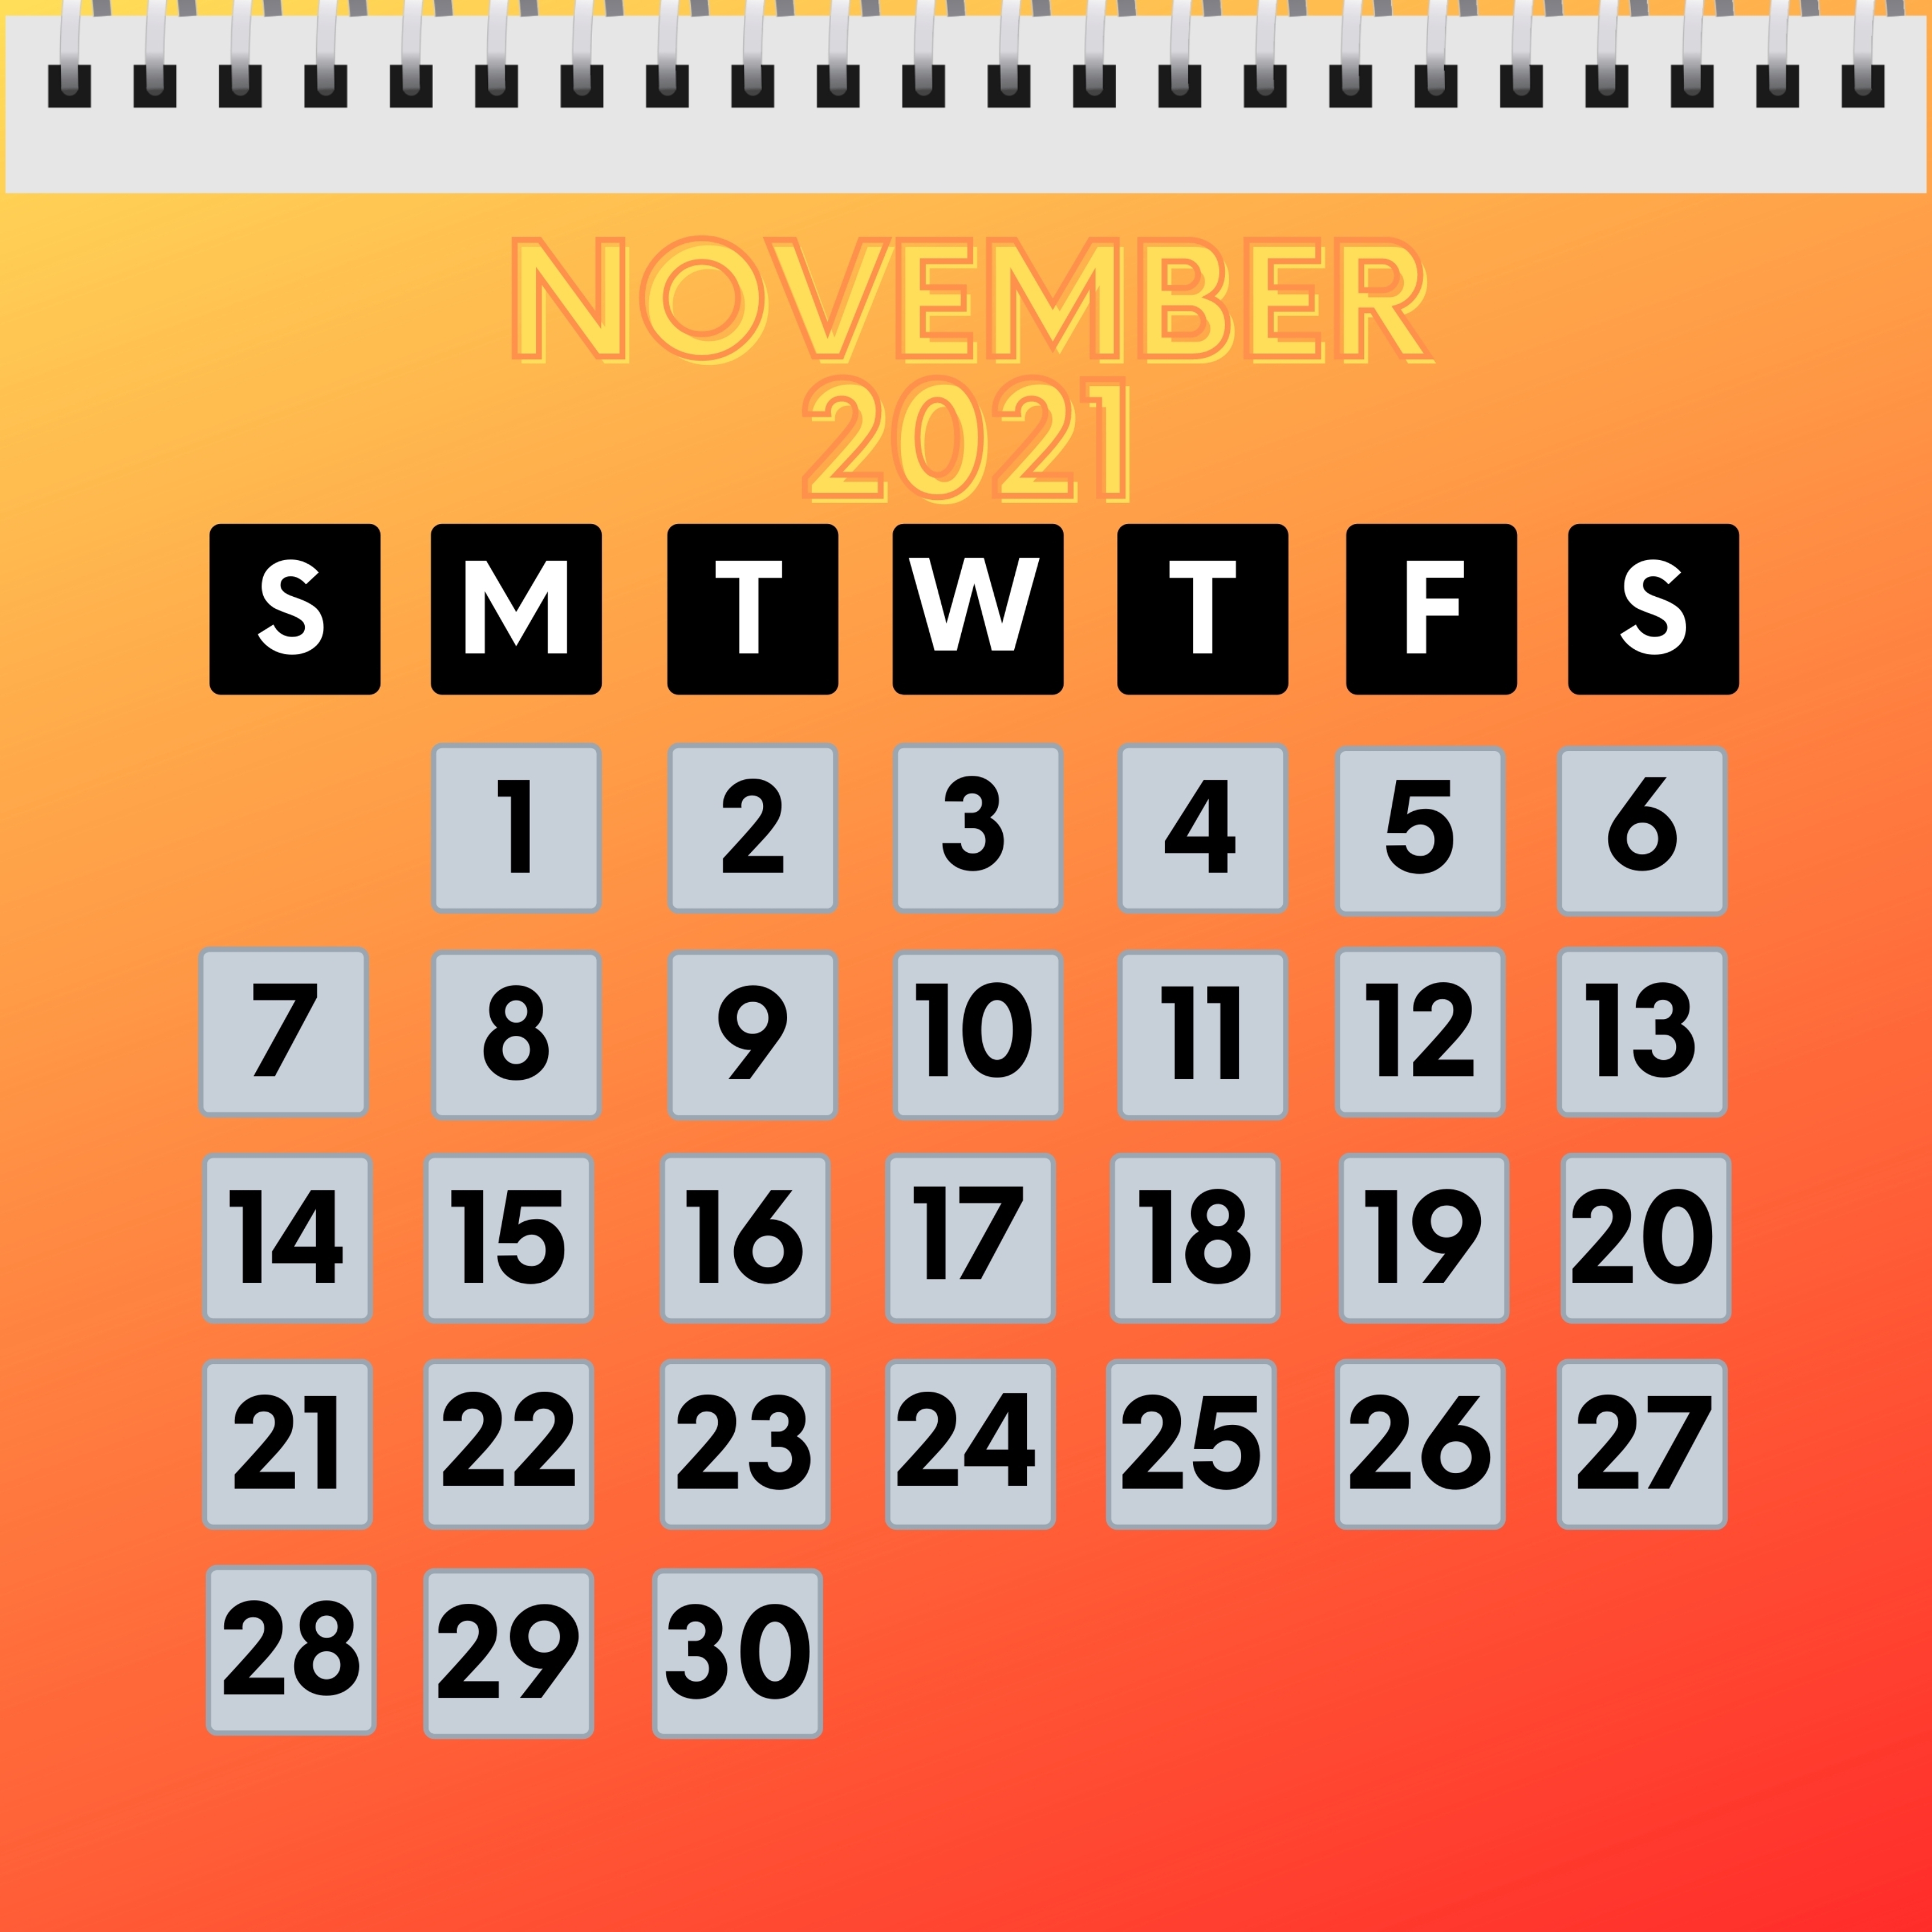 iPad Wallpapers November 2021 Calendar iPad Wallpaper 3208x3208 px